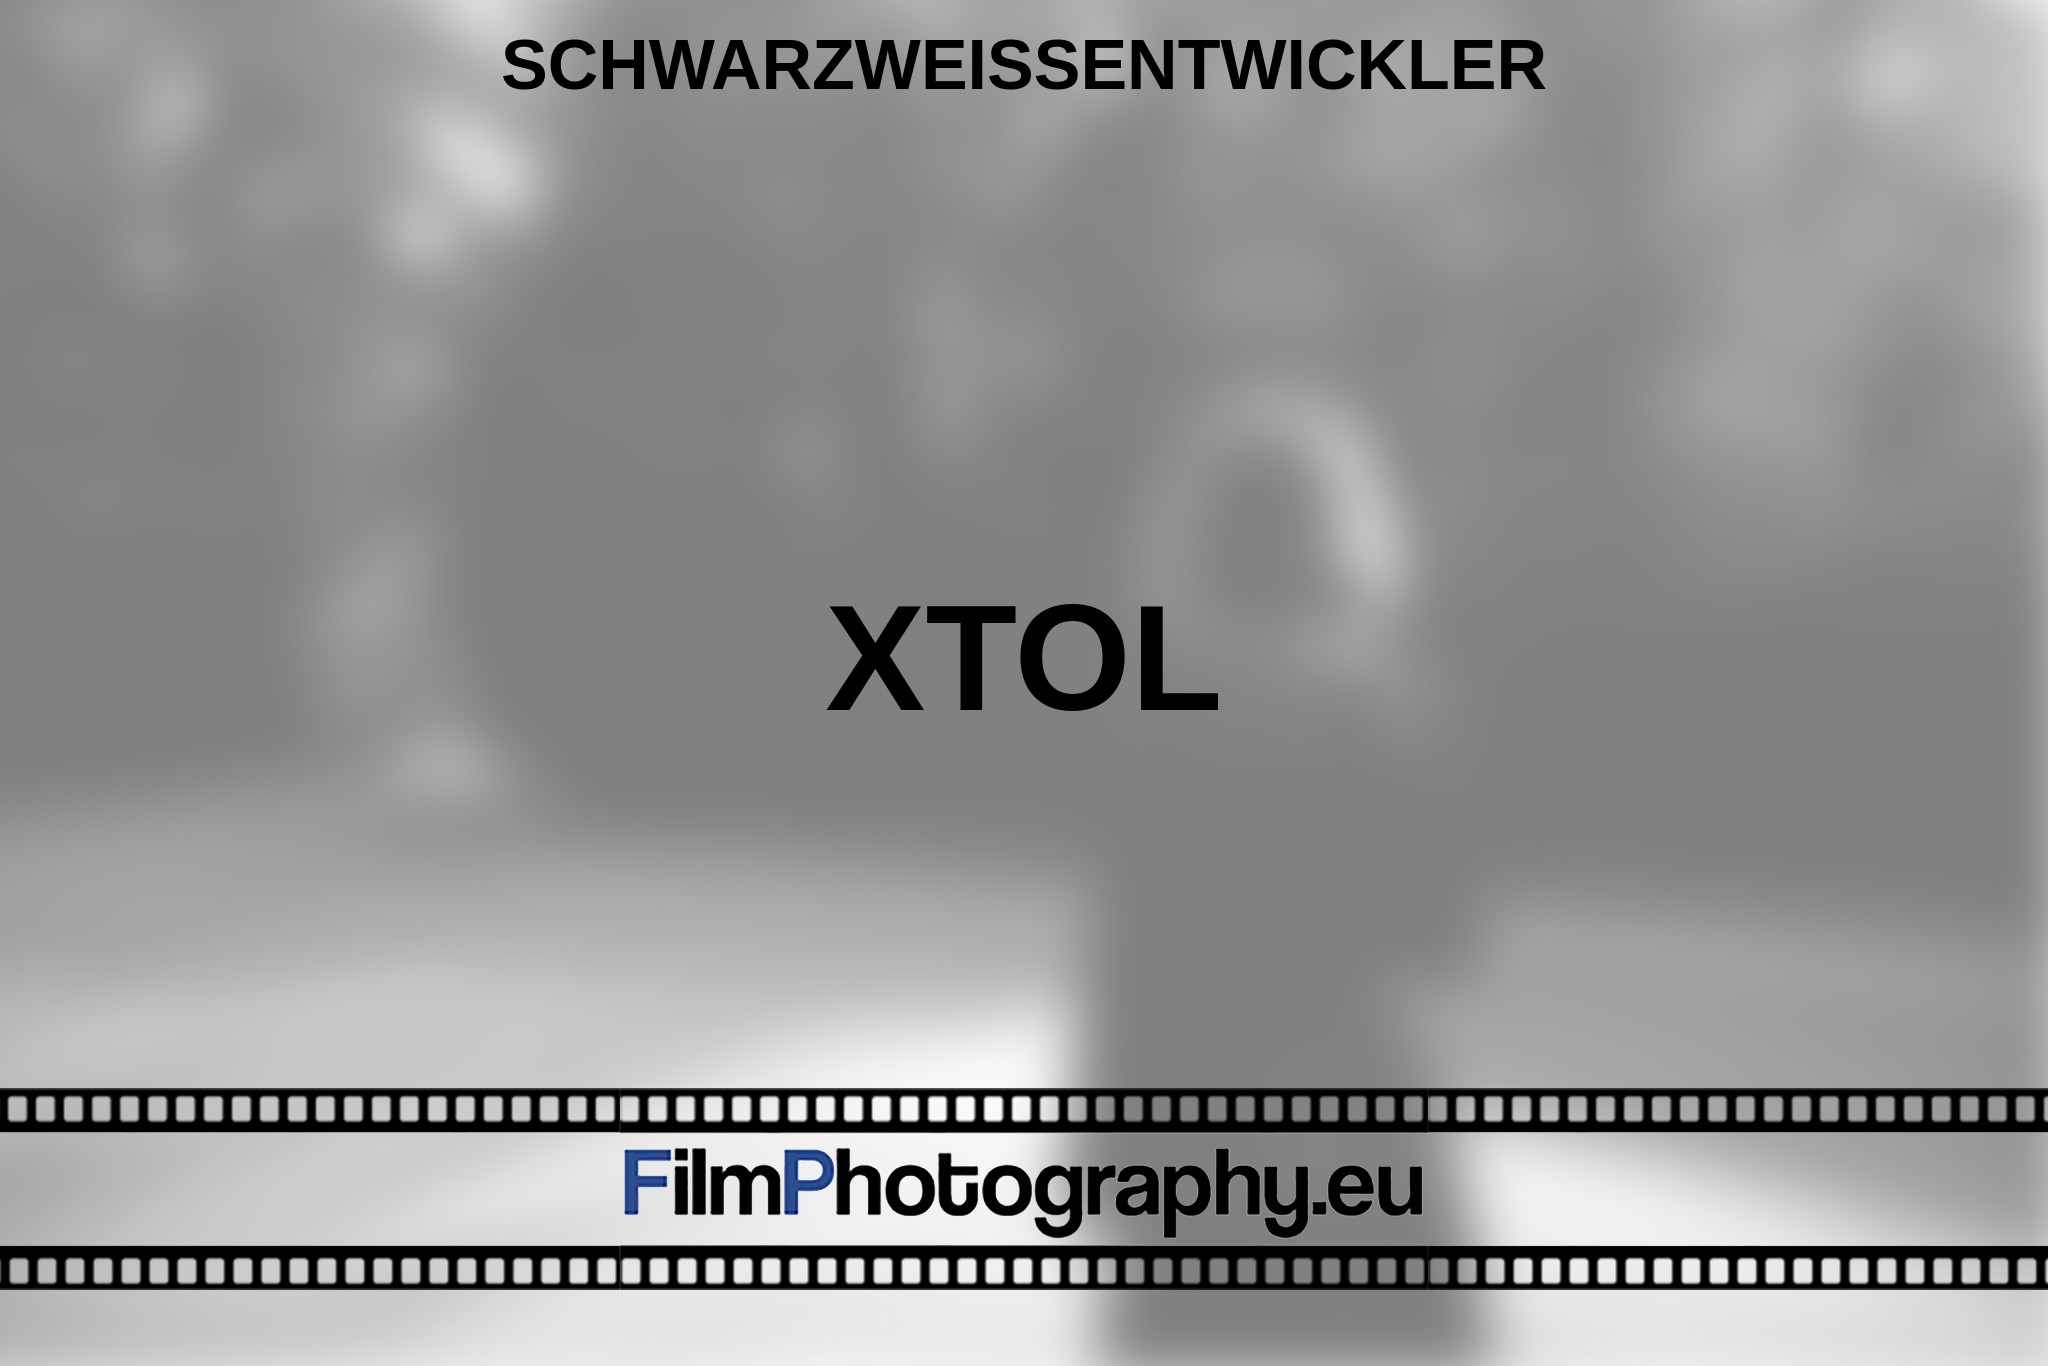 xtol-schwarzweißentwickler-bnv.jpg